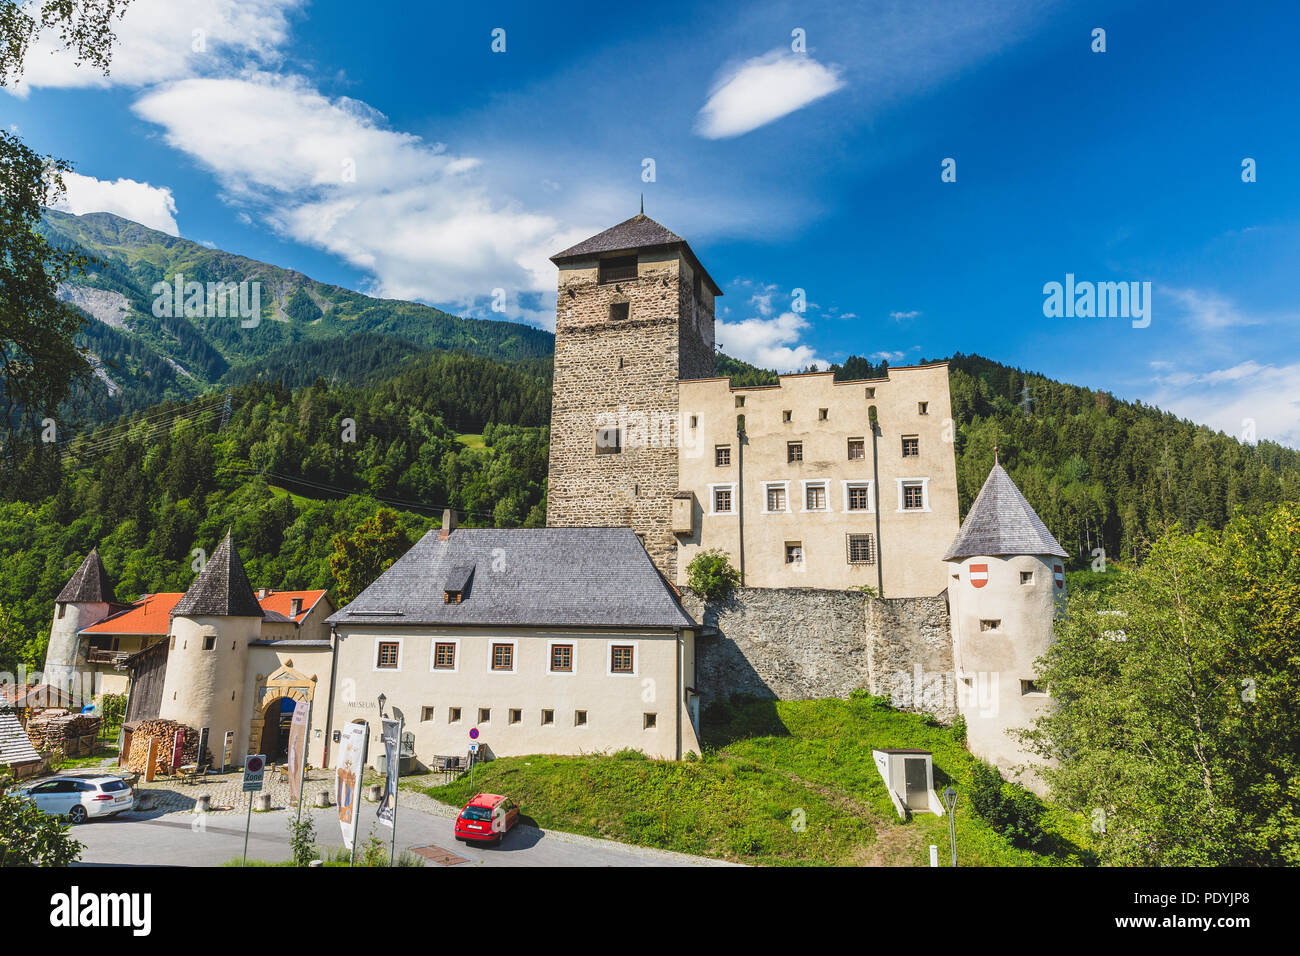 Le Château de Schloss Landeck, Tyrol, Autriche Banque D'Images